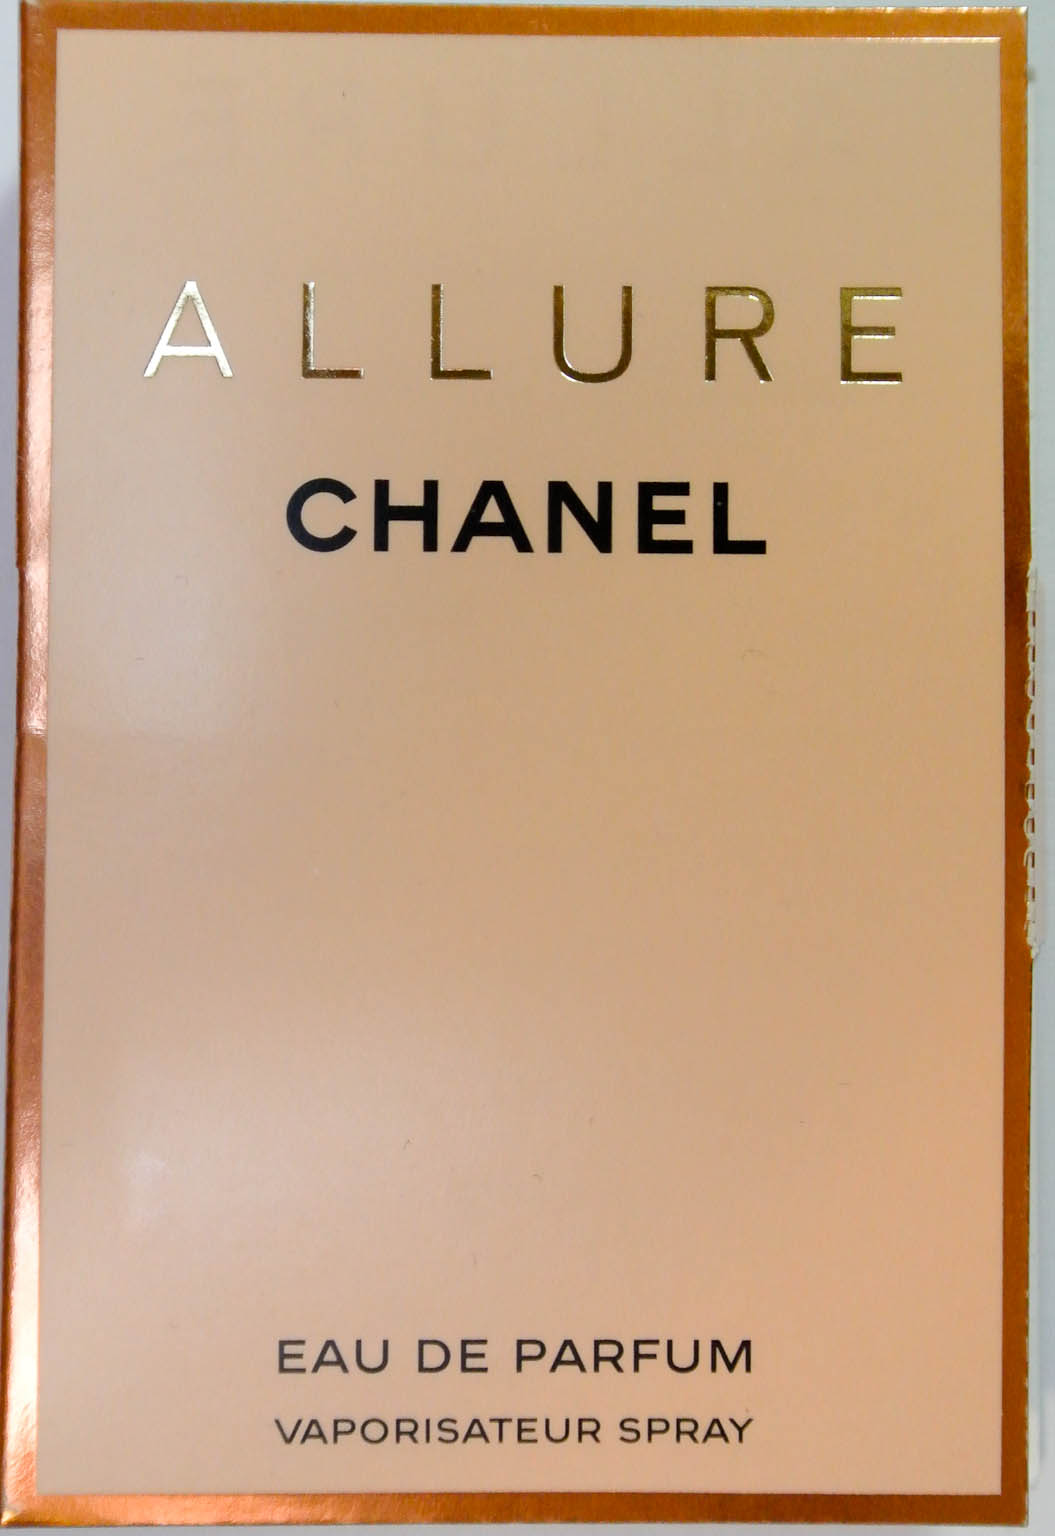 Connoisseur De Parfum: Double Review: Chanel Allure (Eau De Parfum and  Parfum )